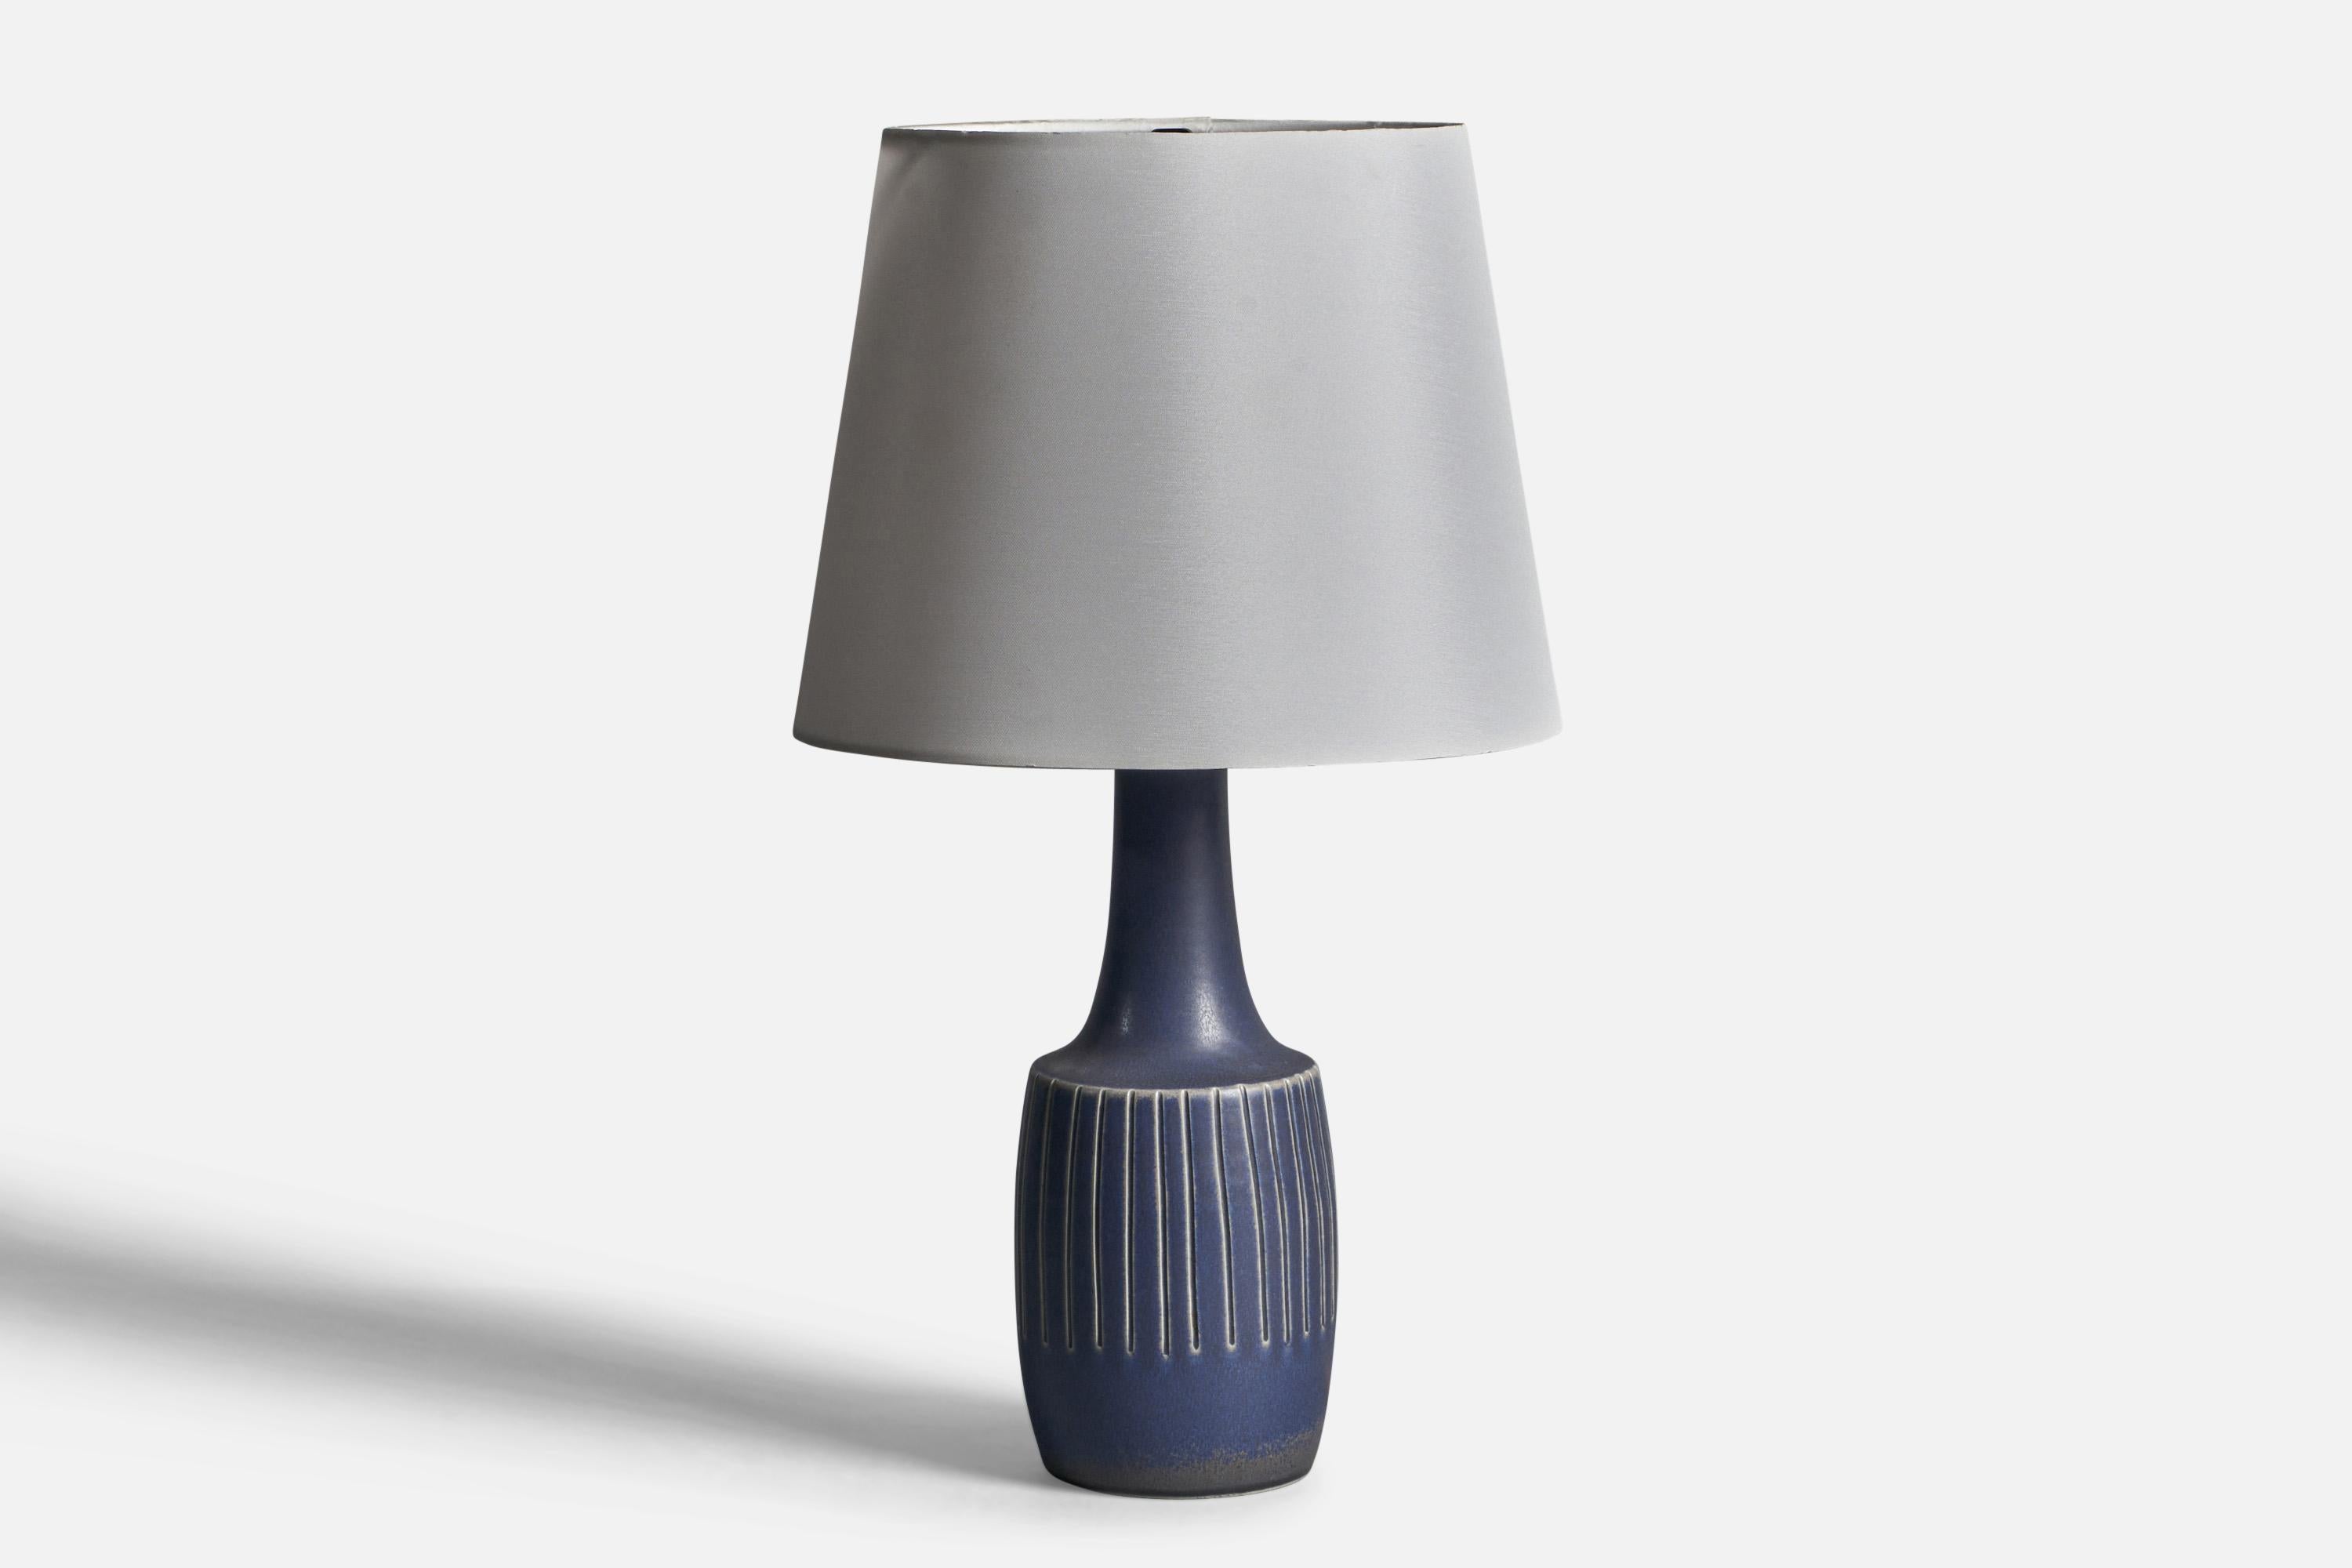 Lampe de table en grès émaillé bleu, conçue et produite par Søholm, Bornholm, Danemark, années 1960.

Dimensions de la lampe (pouces) : 13